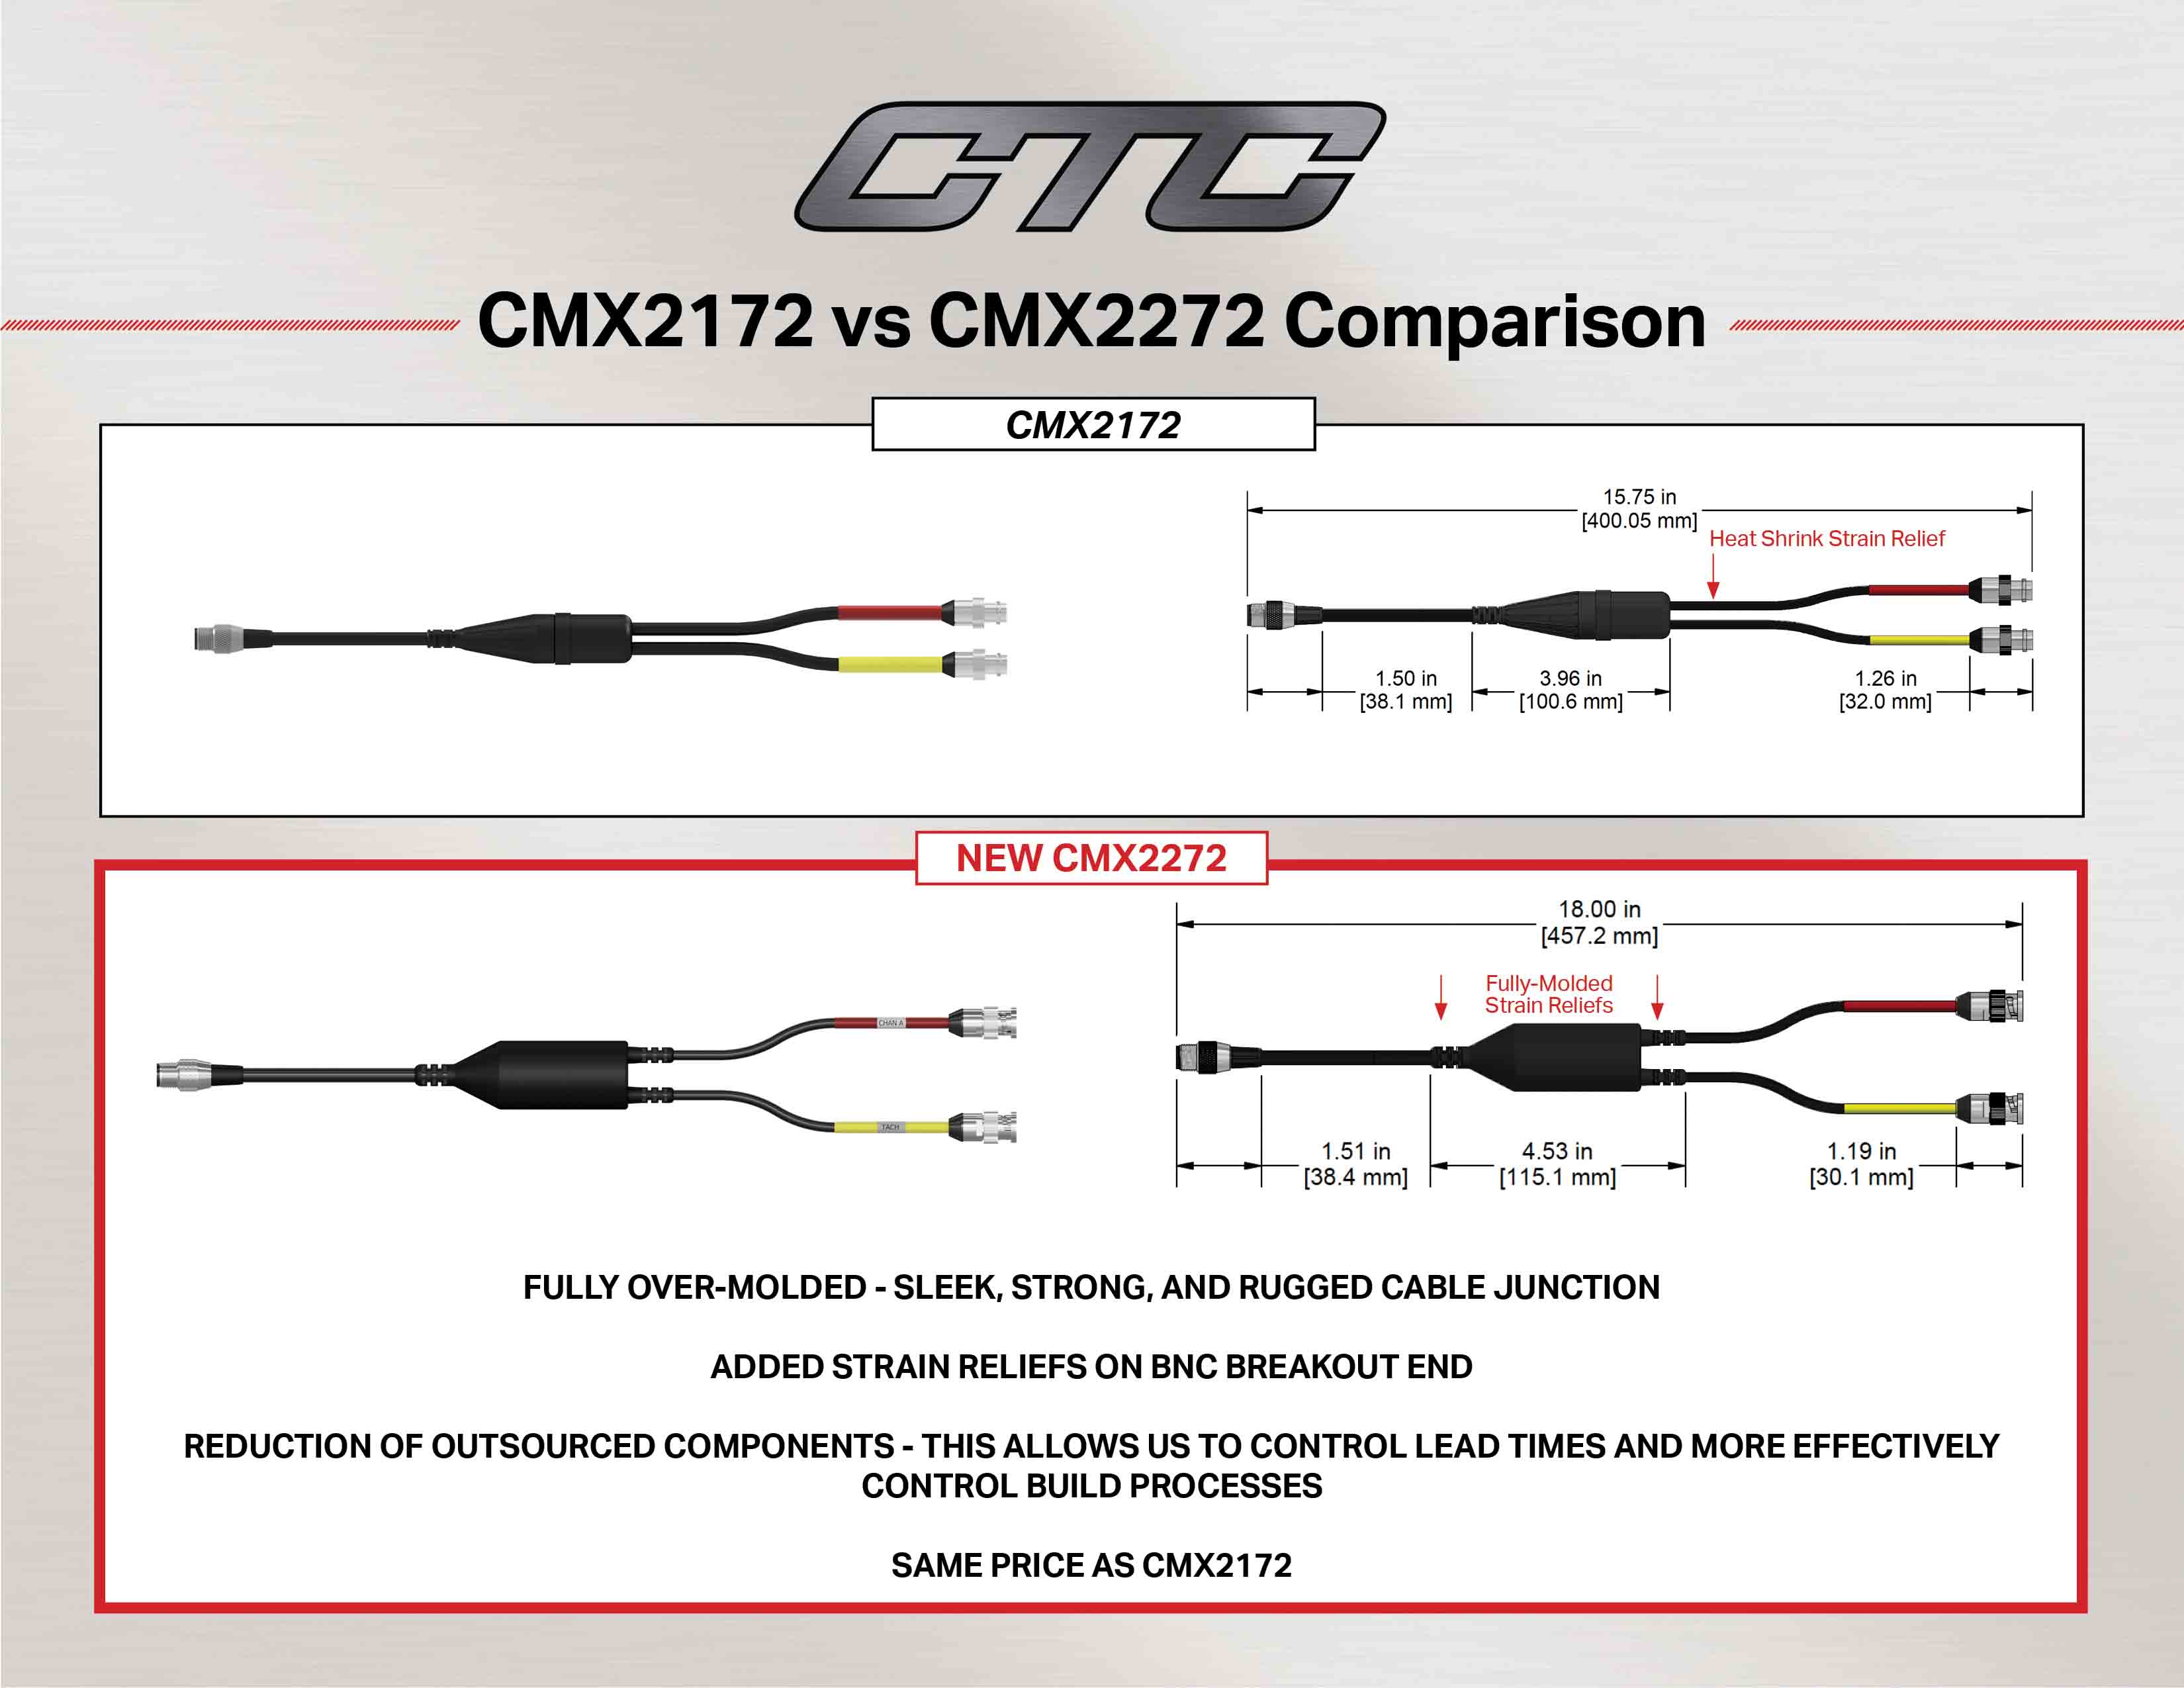 CMX2172 vs CMX2272 cable comparison and measurements